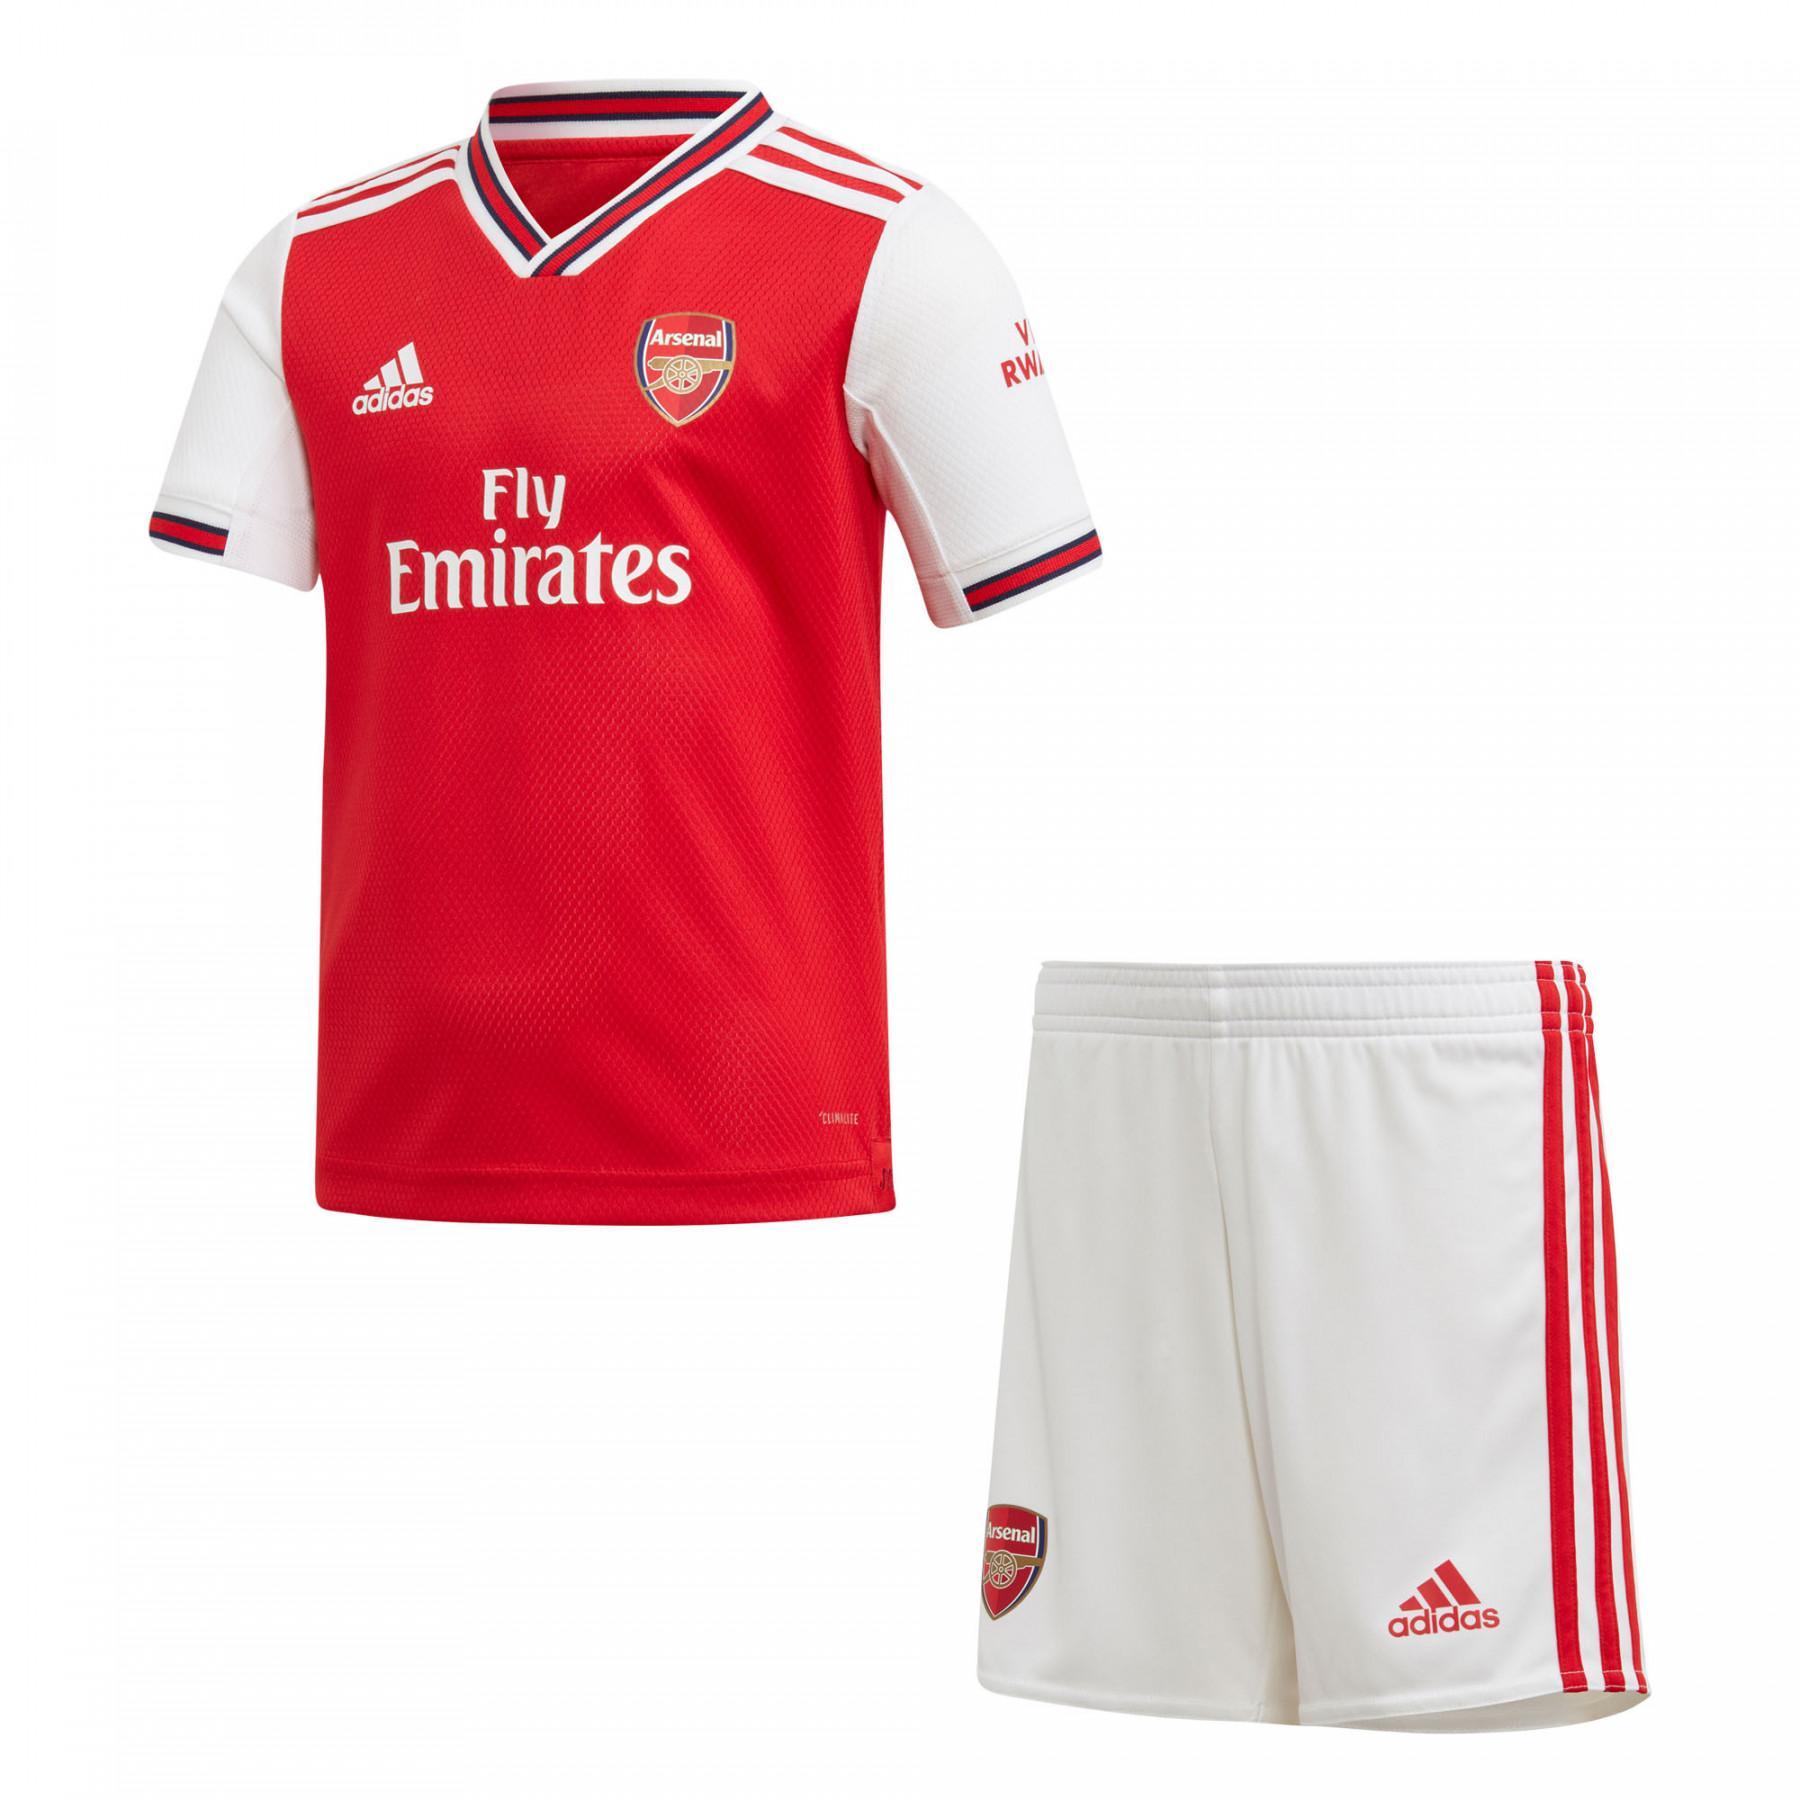 Mini-kit Arsenal 2019/20